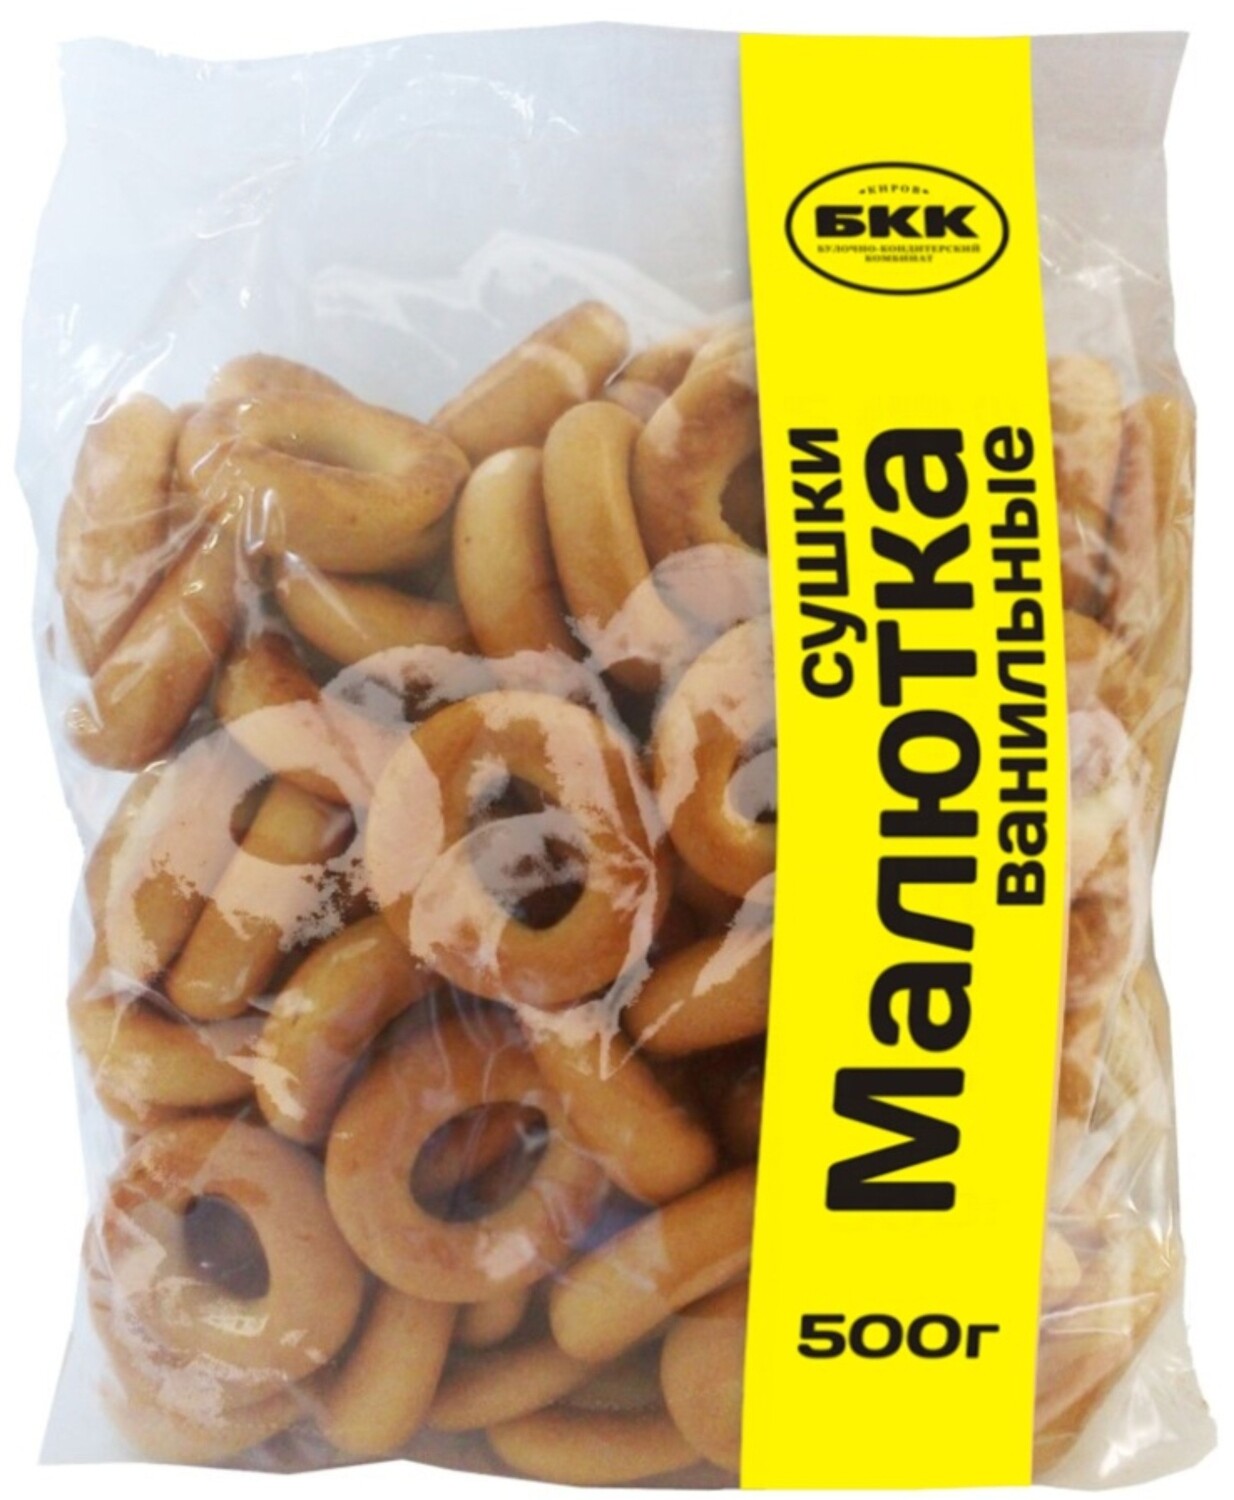 BKK Malutka Crisp Bread Rings with Vanilla (Sushki) 17.6 oz (500g)